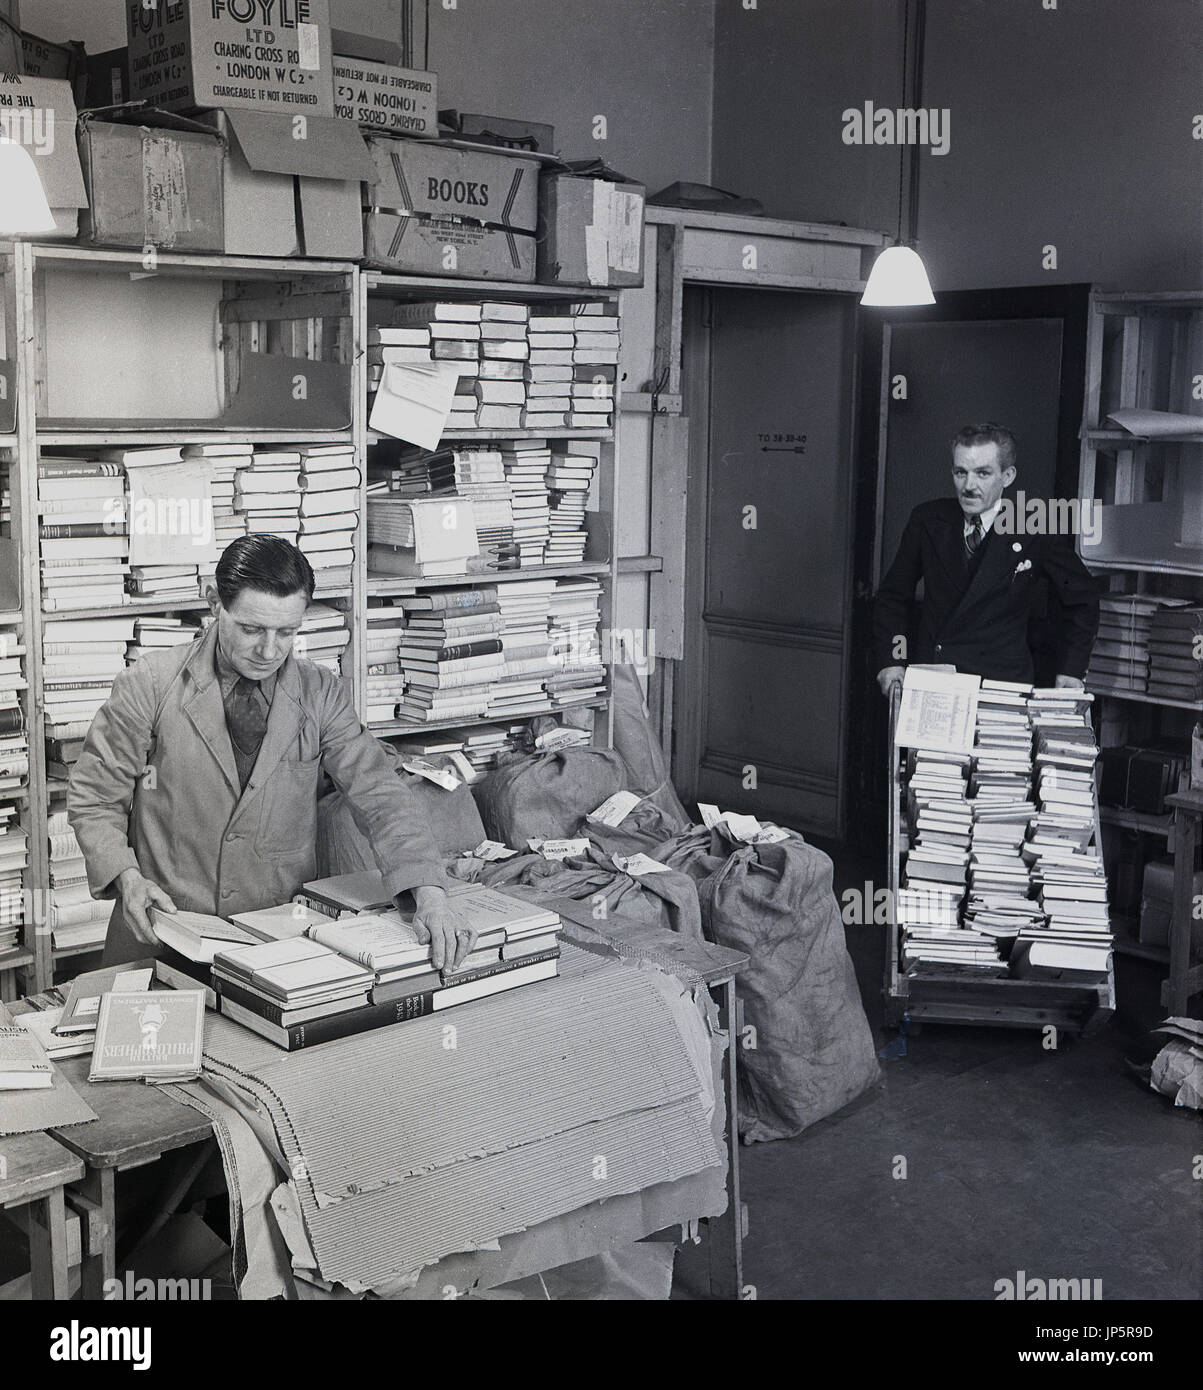 der 1950er Jahre, Bild zeigt einen beschichteten Mitarbeiter mit Krawatte Verpackung Bücher bereit für den Versand in eine Abstellkammer in der berühmten Buchhandlung W & G Foyle Ltd, Charing Cross Road, London, während ein anderer geeignet Mitarbeiter mehr bringt Bücher, auf einem Wagen. Stockfoto